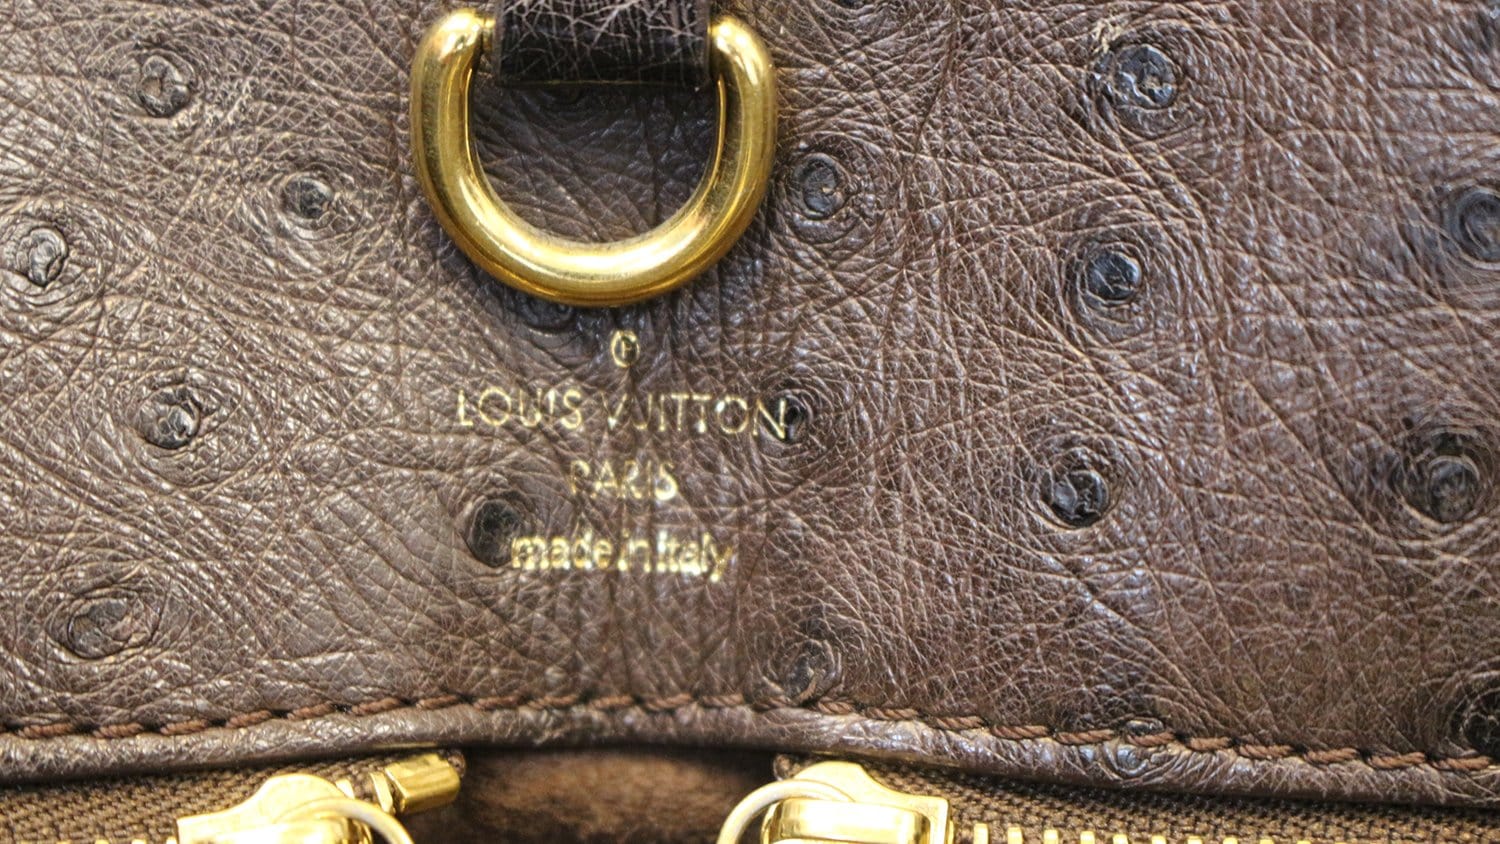 LOUIS VUITTON Monogram Etoile Exotique GM Tote Bag Limited Edition